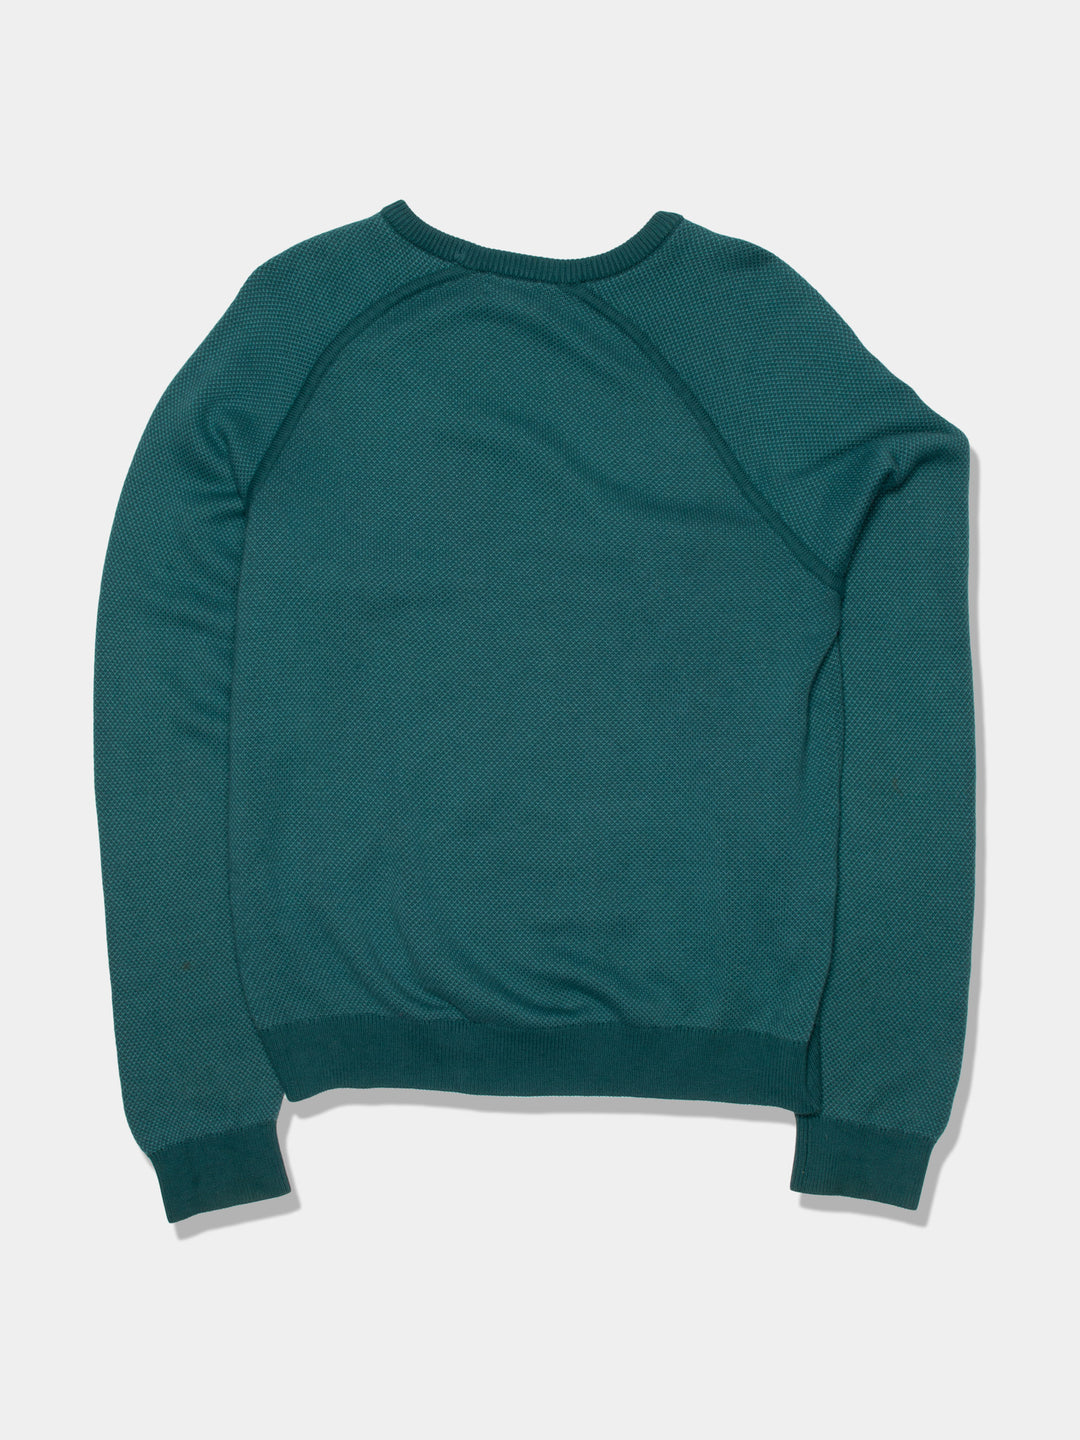 Vintage L.L. Bean Green Sweater (L)